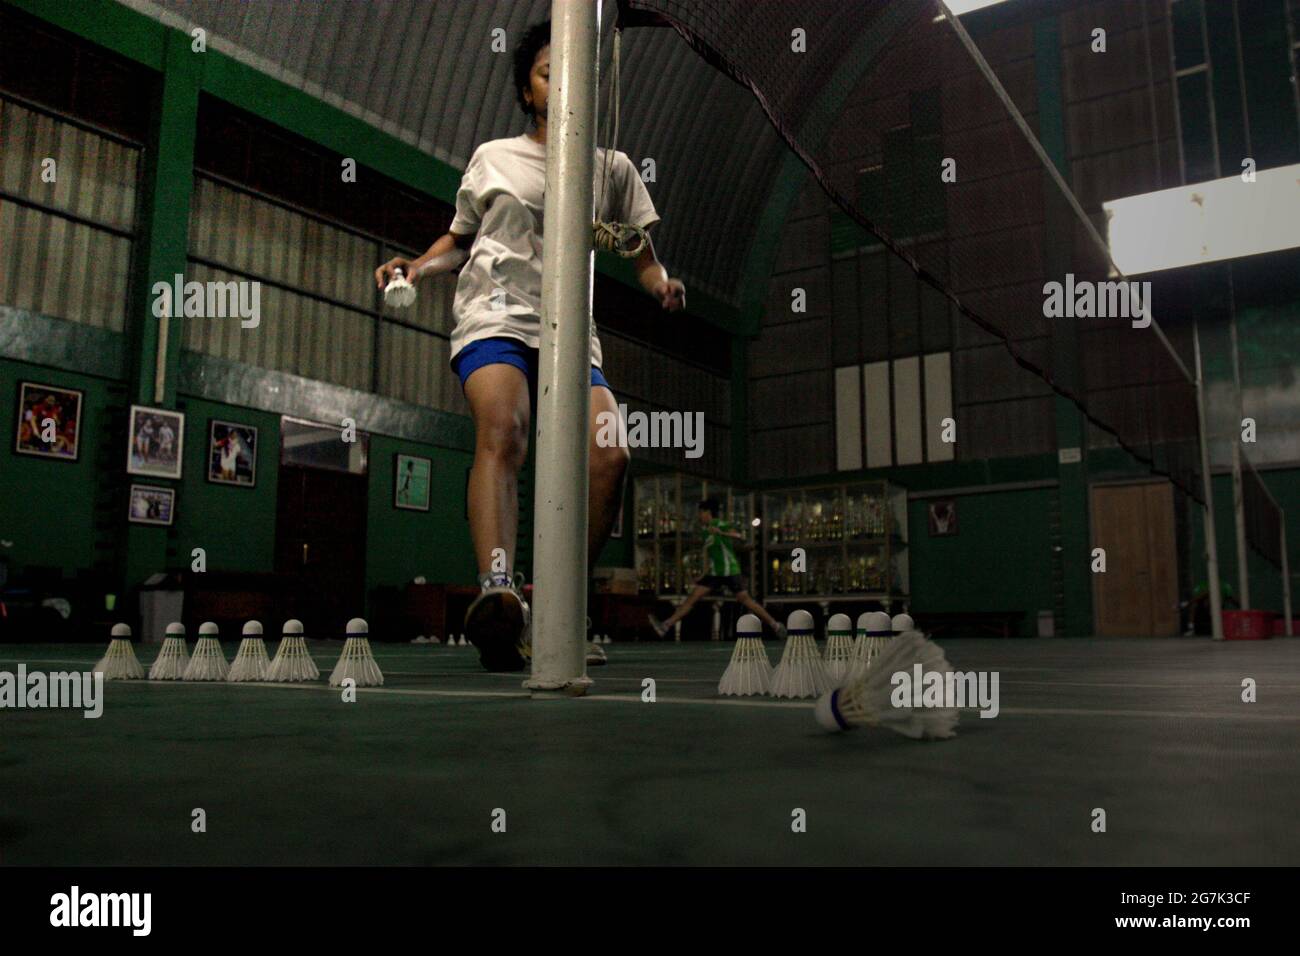 Les jeunes joueurs de badminton ont une session d'entraînement au club de badminton Jaya Raya à Jakarta, en Indonésie, photographié dans un fond d'armoire à trophées et une photo de l'ancien joueur vedette du club, Susi Susanti, médaillé d'or olympique. Banque D'Images